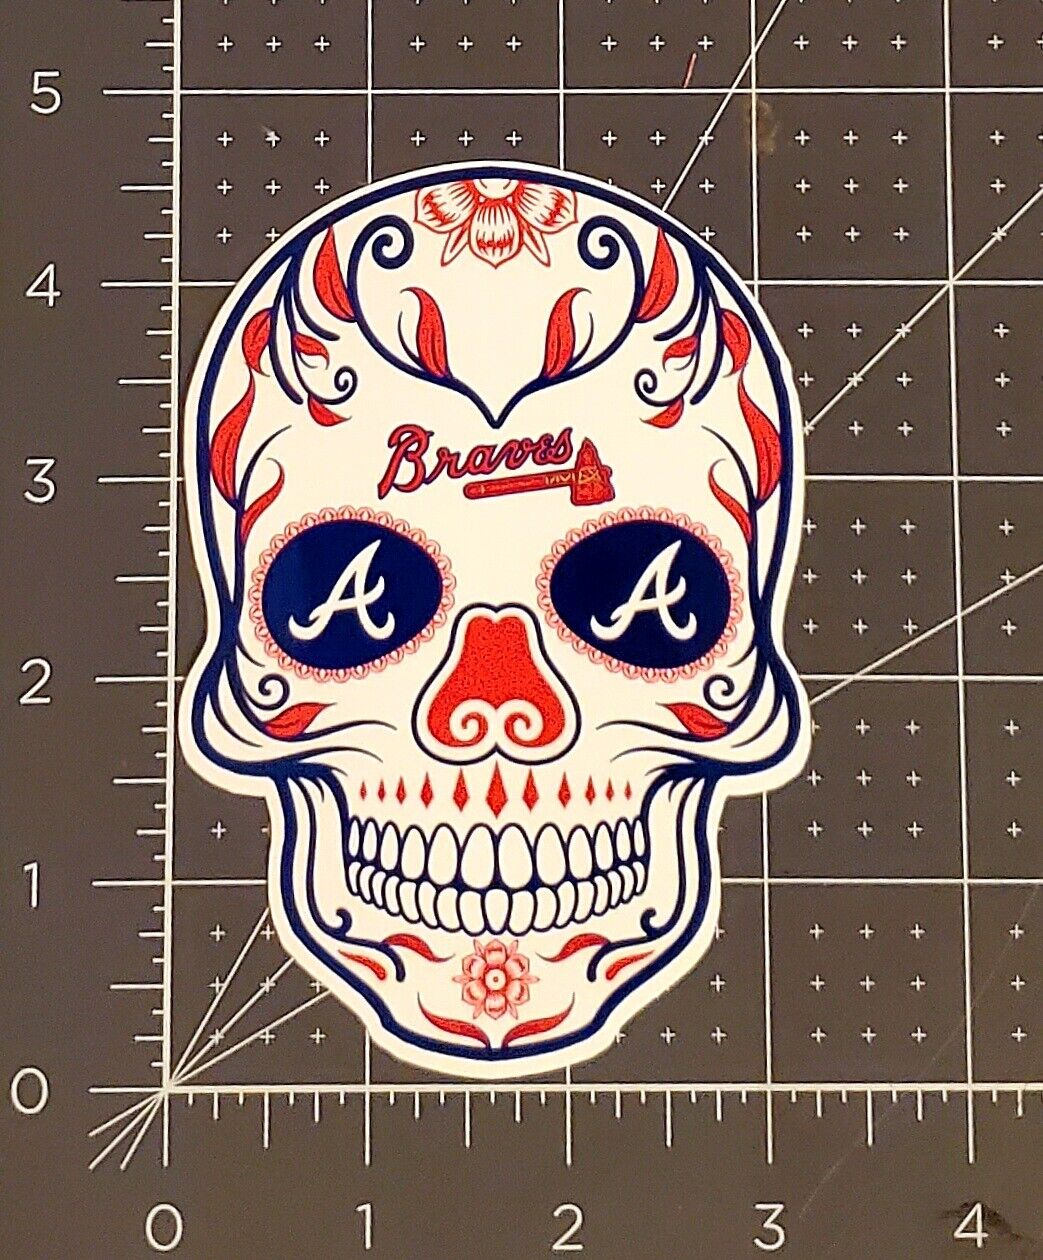 2021 World Series Champions Atlanta Braves Sugar Skull Vinyl Sticker 3.25